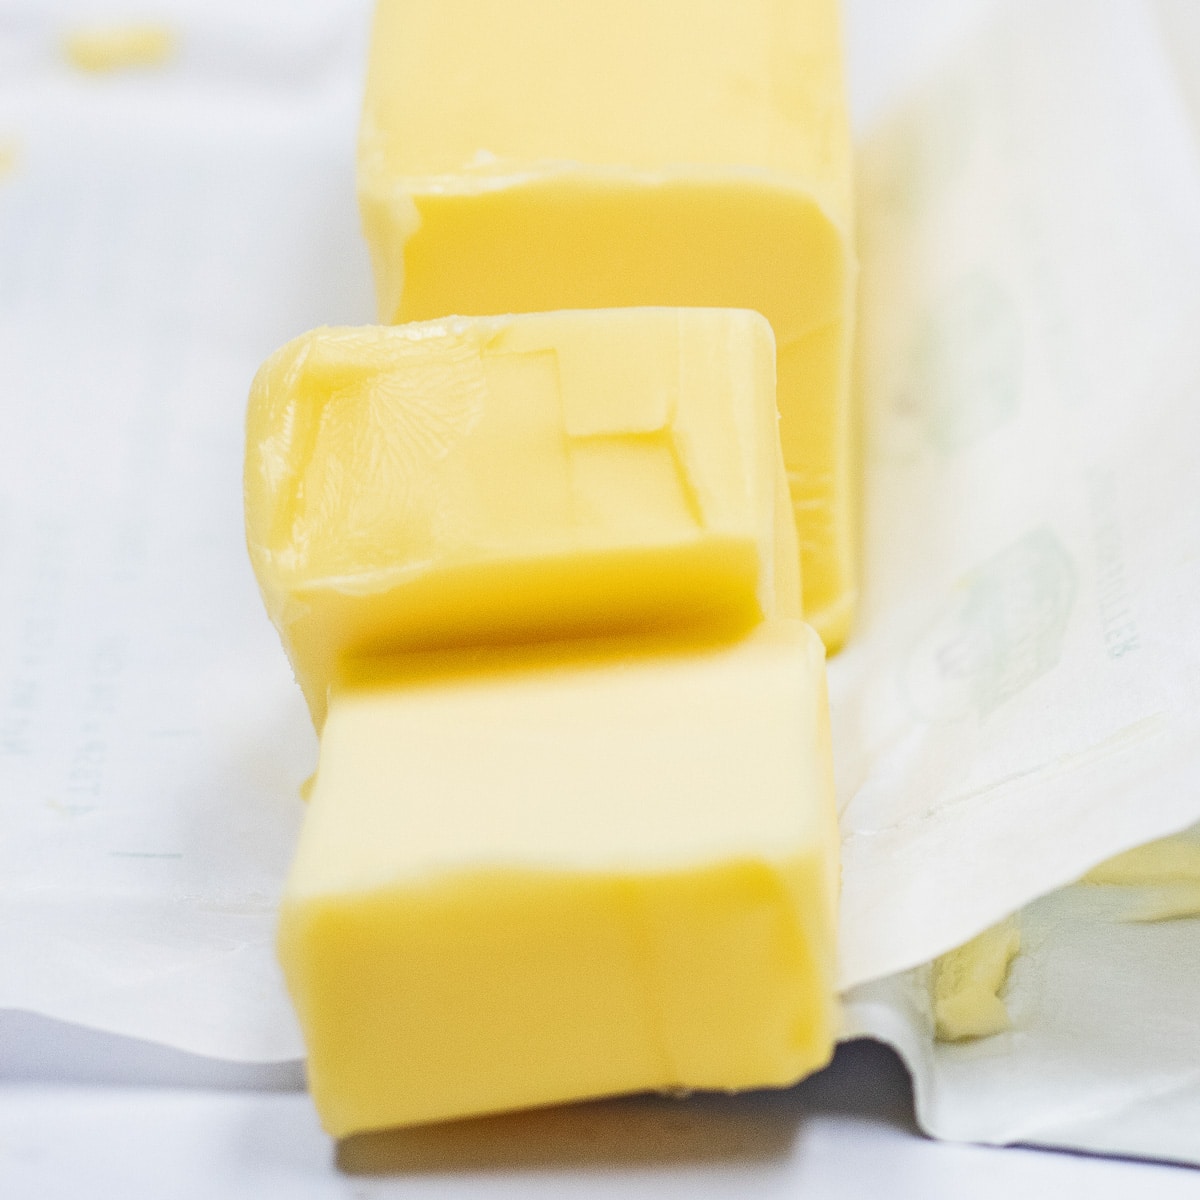 Beste botervervangingsopties om de hier getoonde gesneden Europese boter te vervangen.